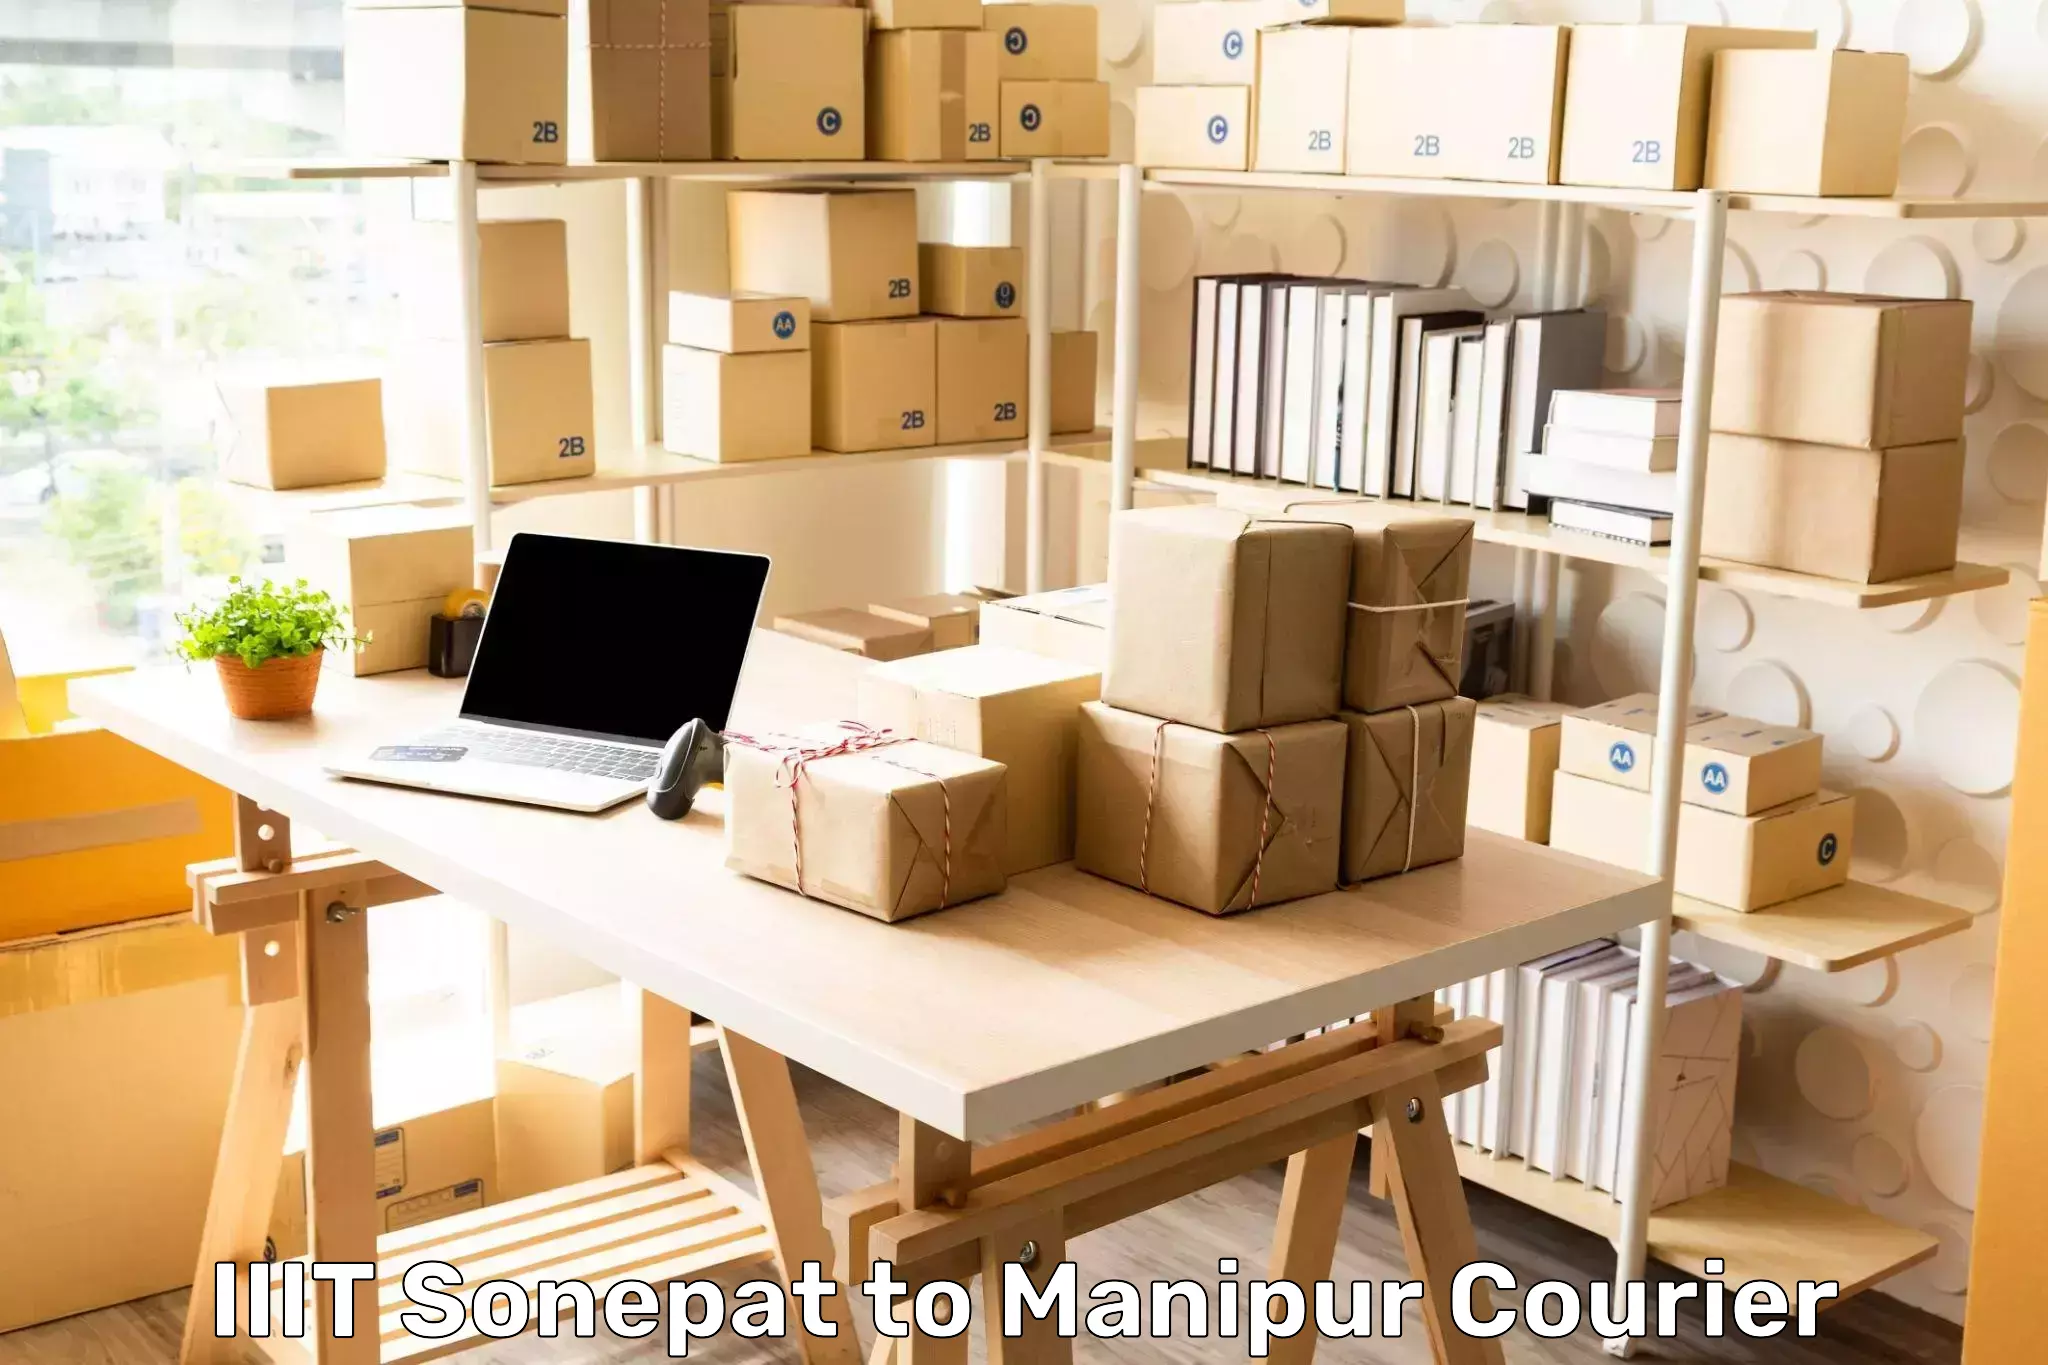 24/7 shipping services IIIT Sonepat to IIIT Senapati